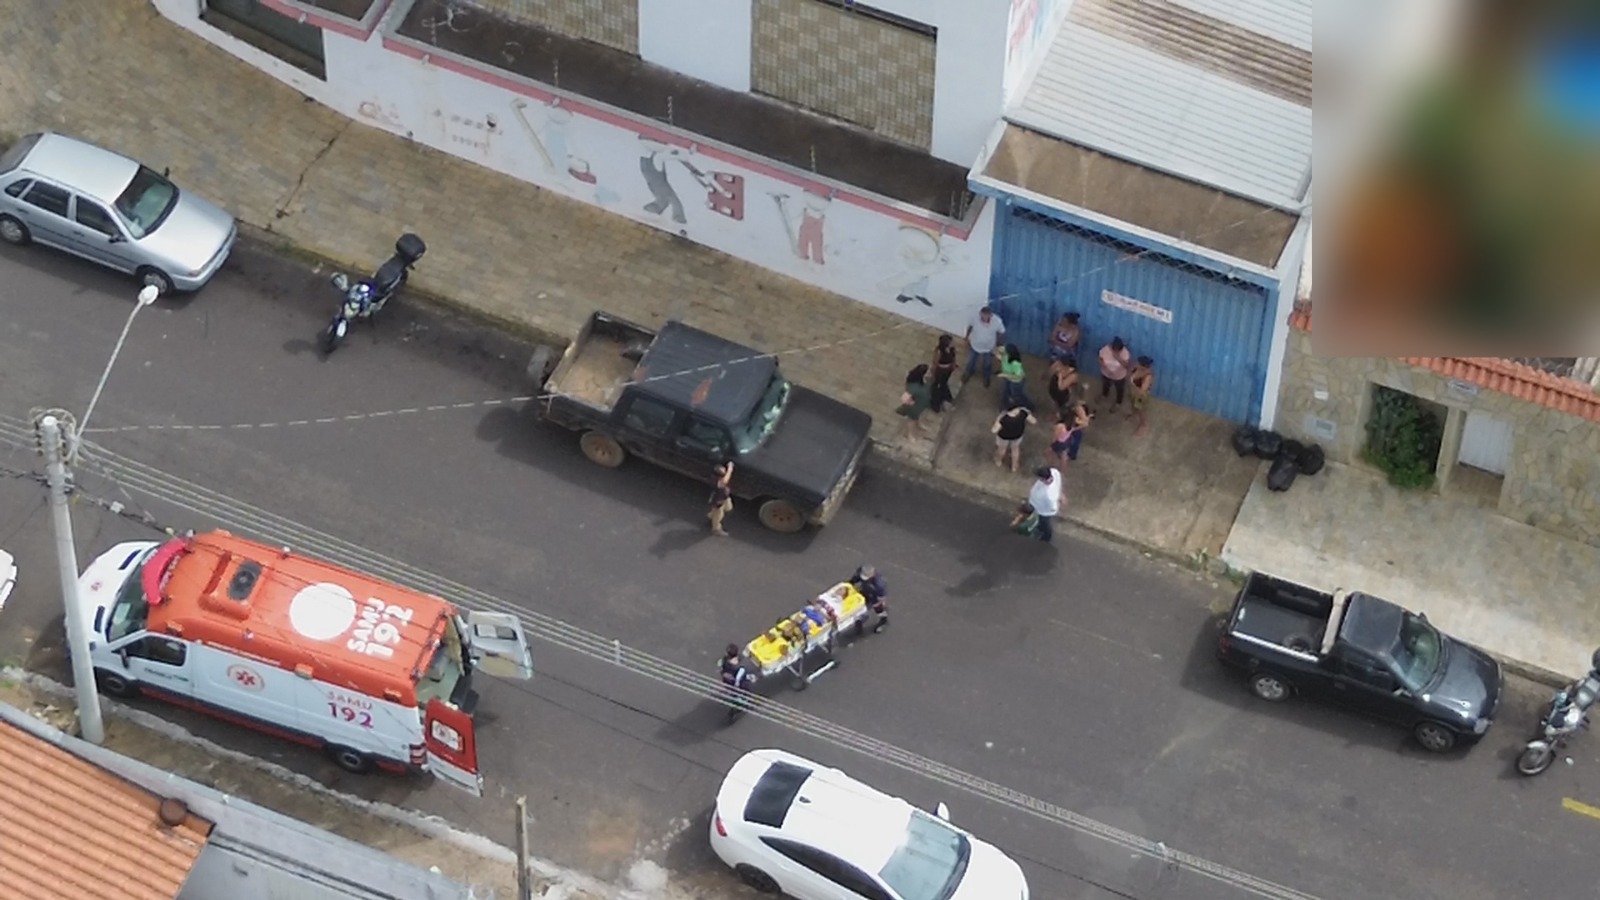 Criança é socorrida após ser atropelada enquanto tentava atravessar rua em Franca